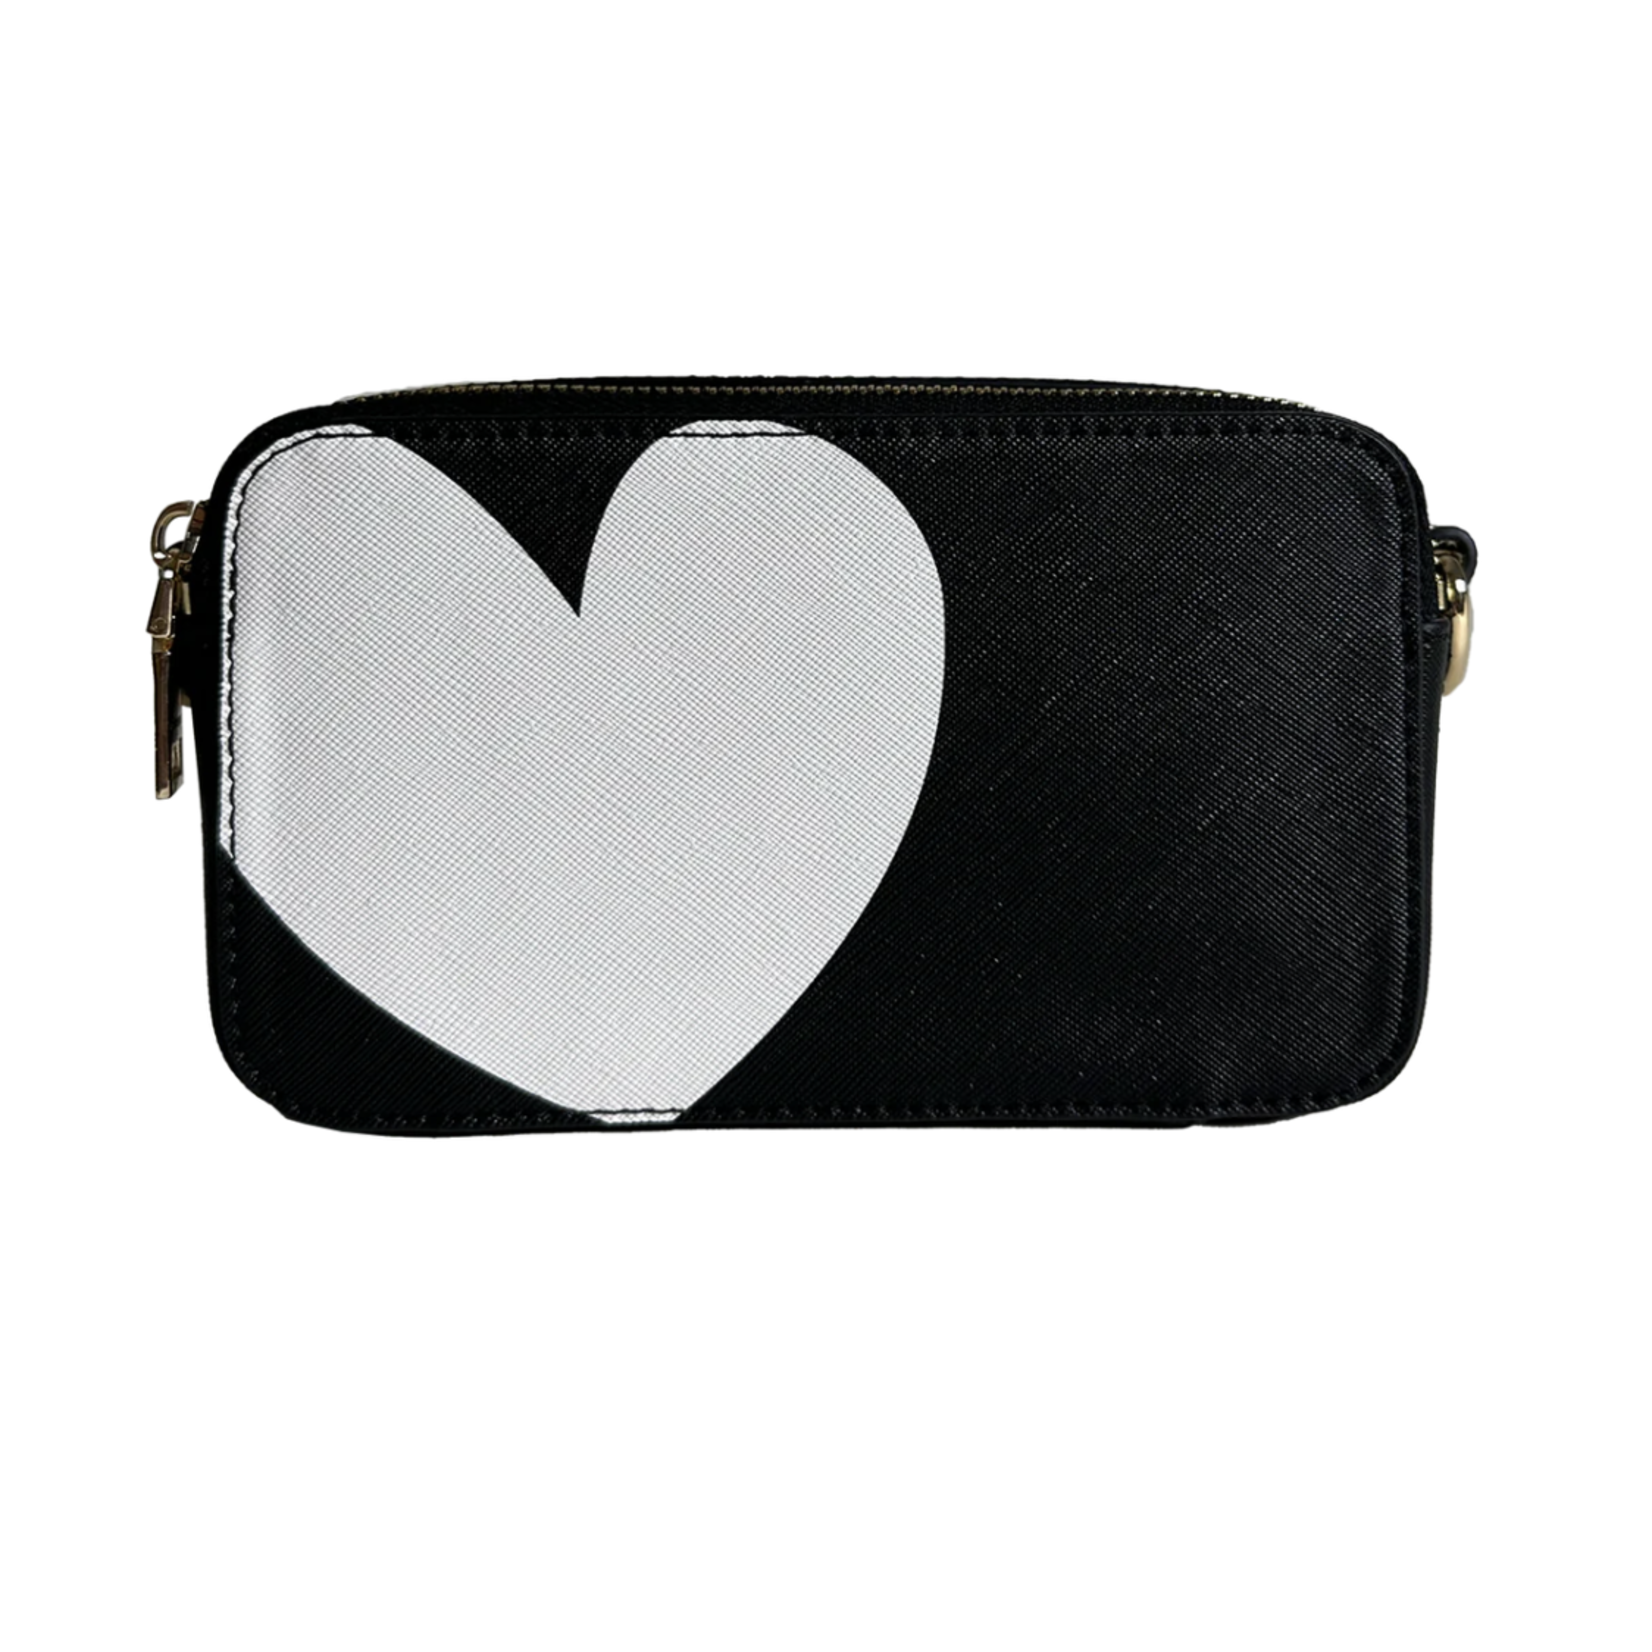 ah-dorned Black w/ White Heart Vegan Leather Camera Bag